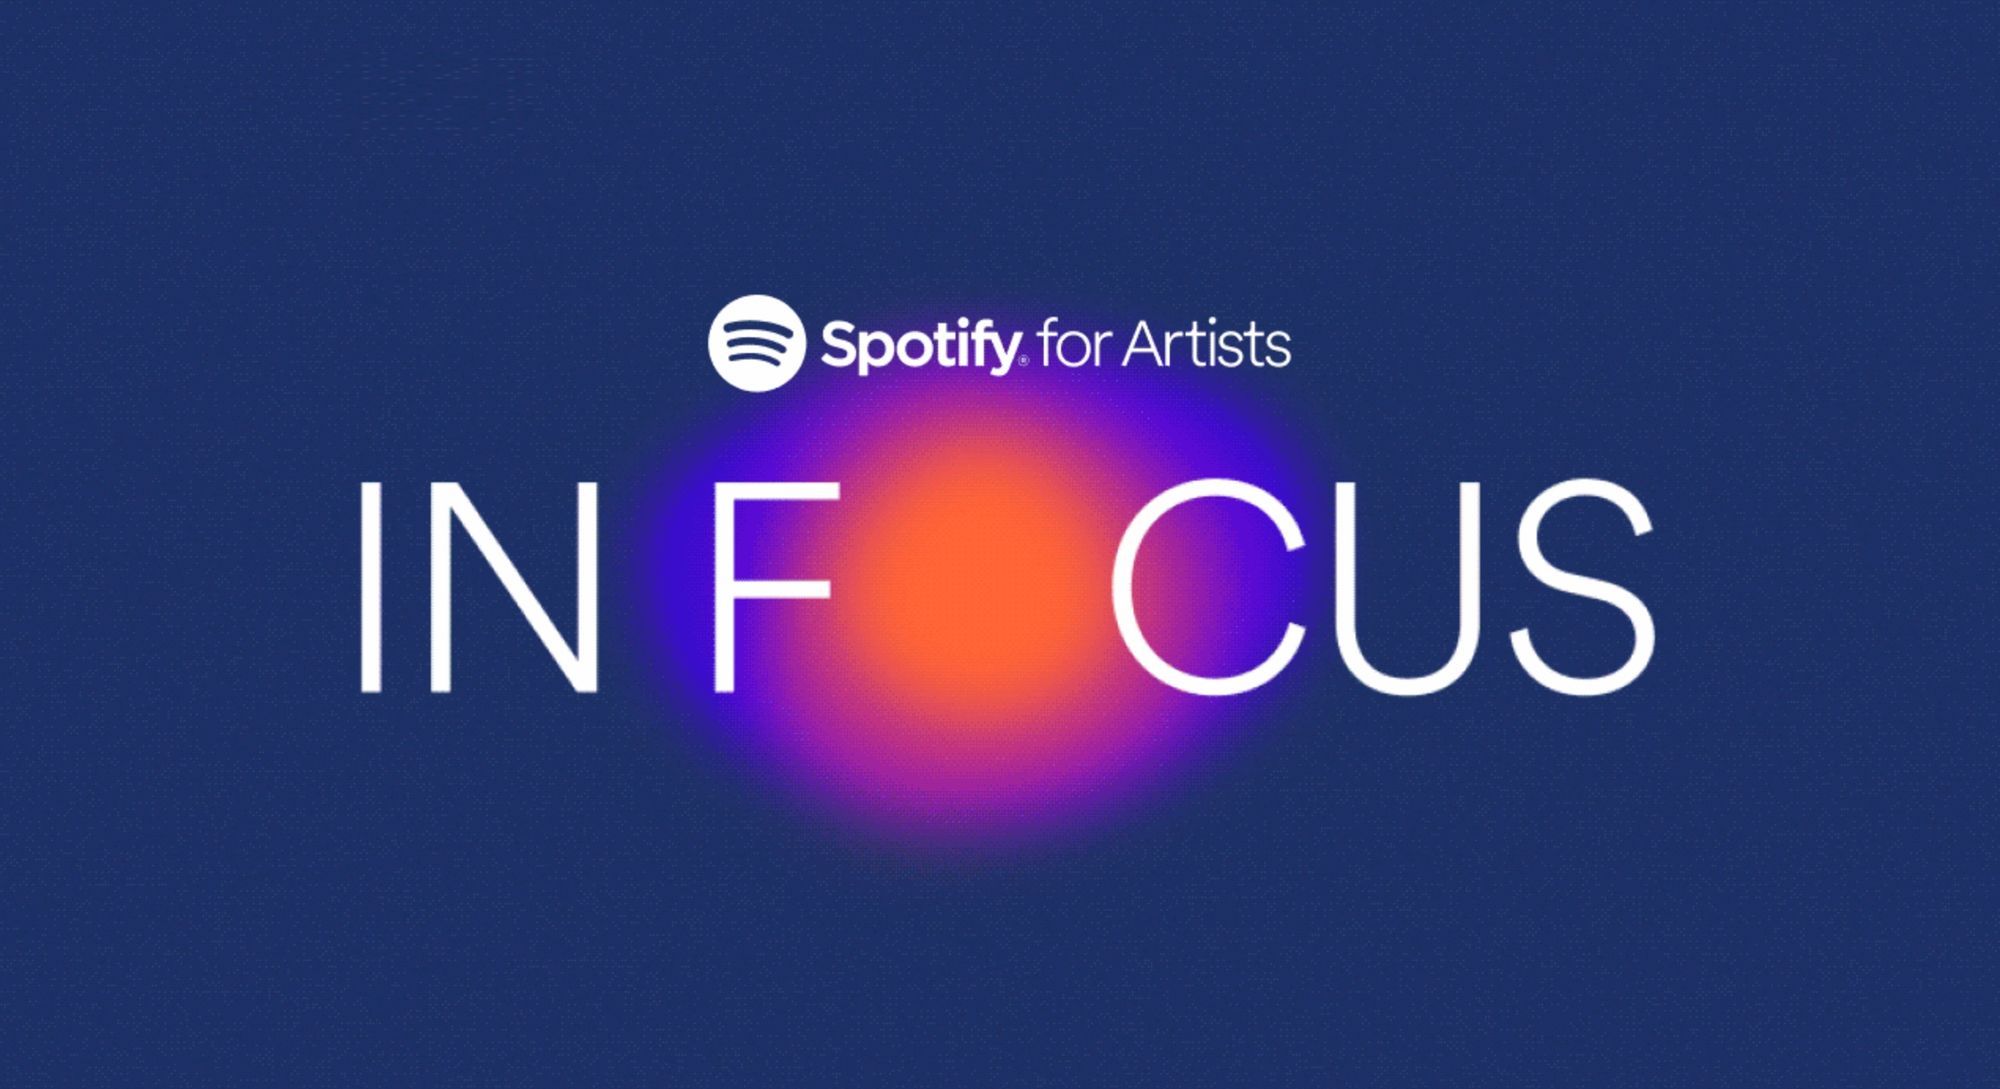 Spotify'In Focus' bietet Ihnen einen kostenlosen Manager?